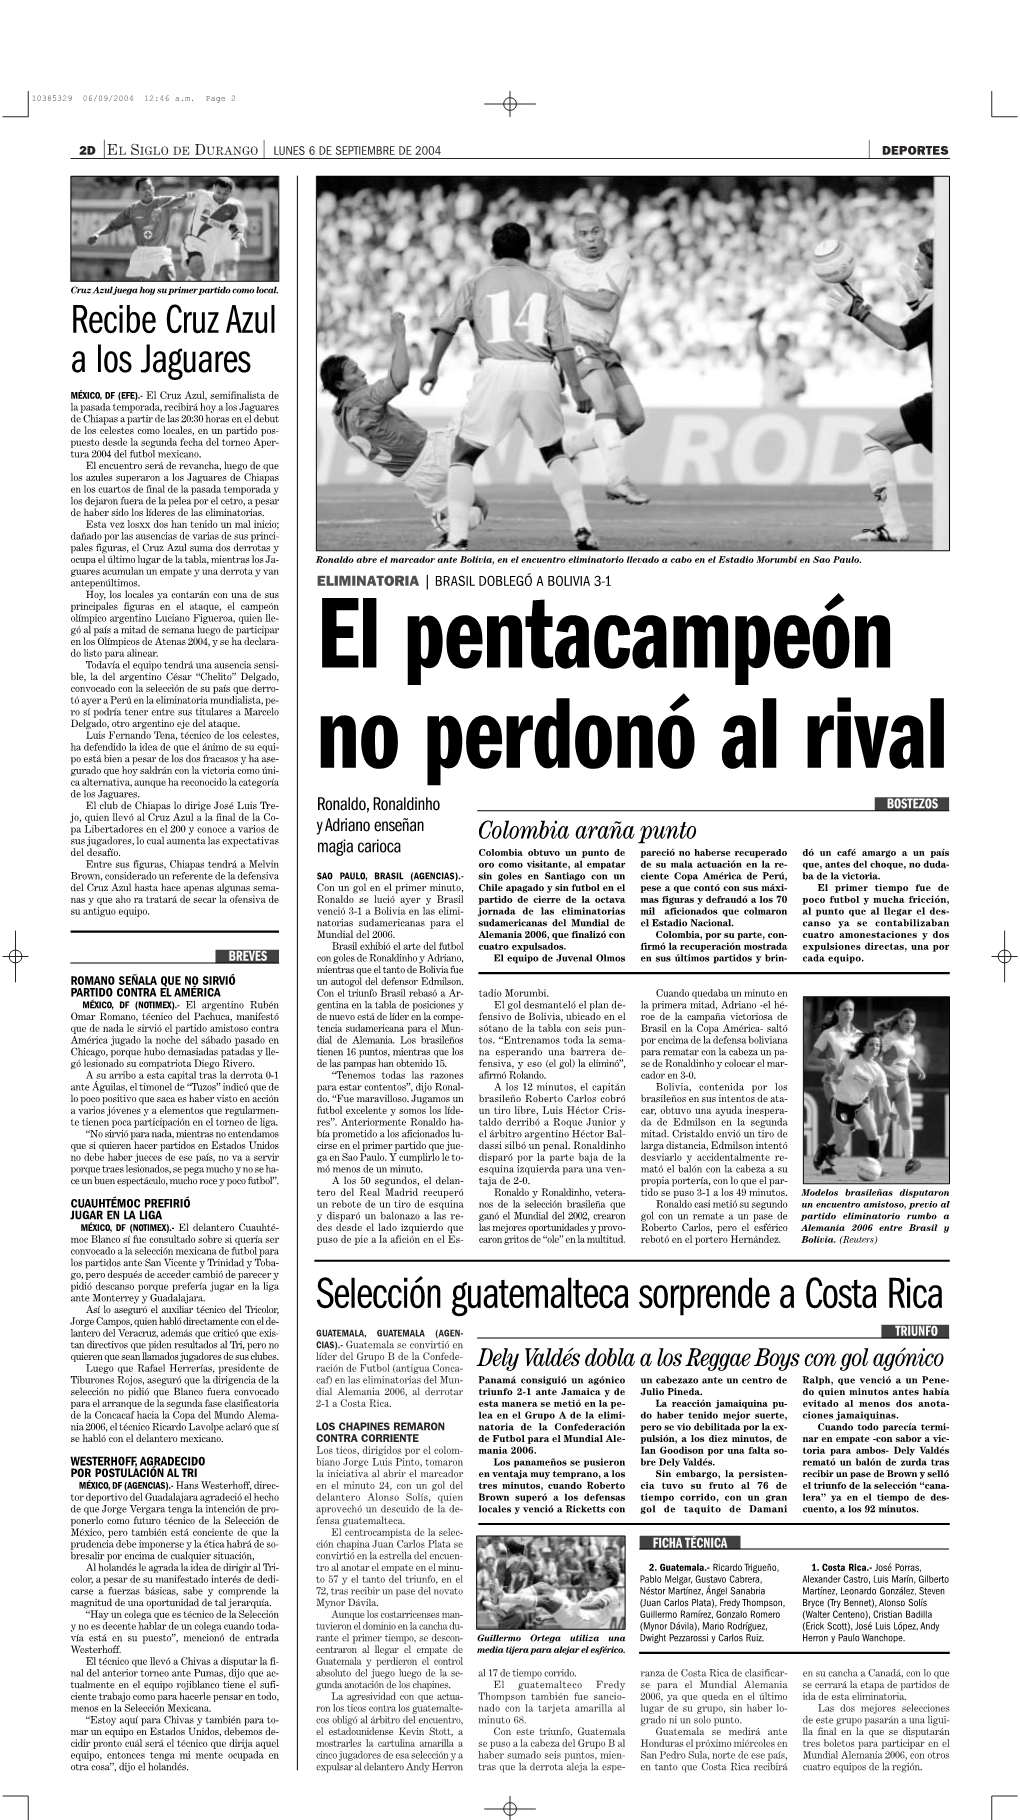 Selección Guatemalteca Sorprende a Costa Rica